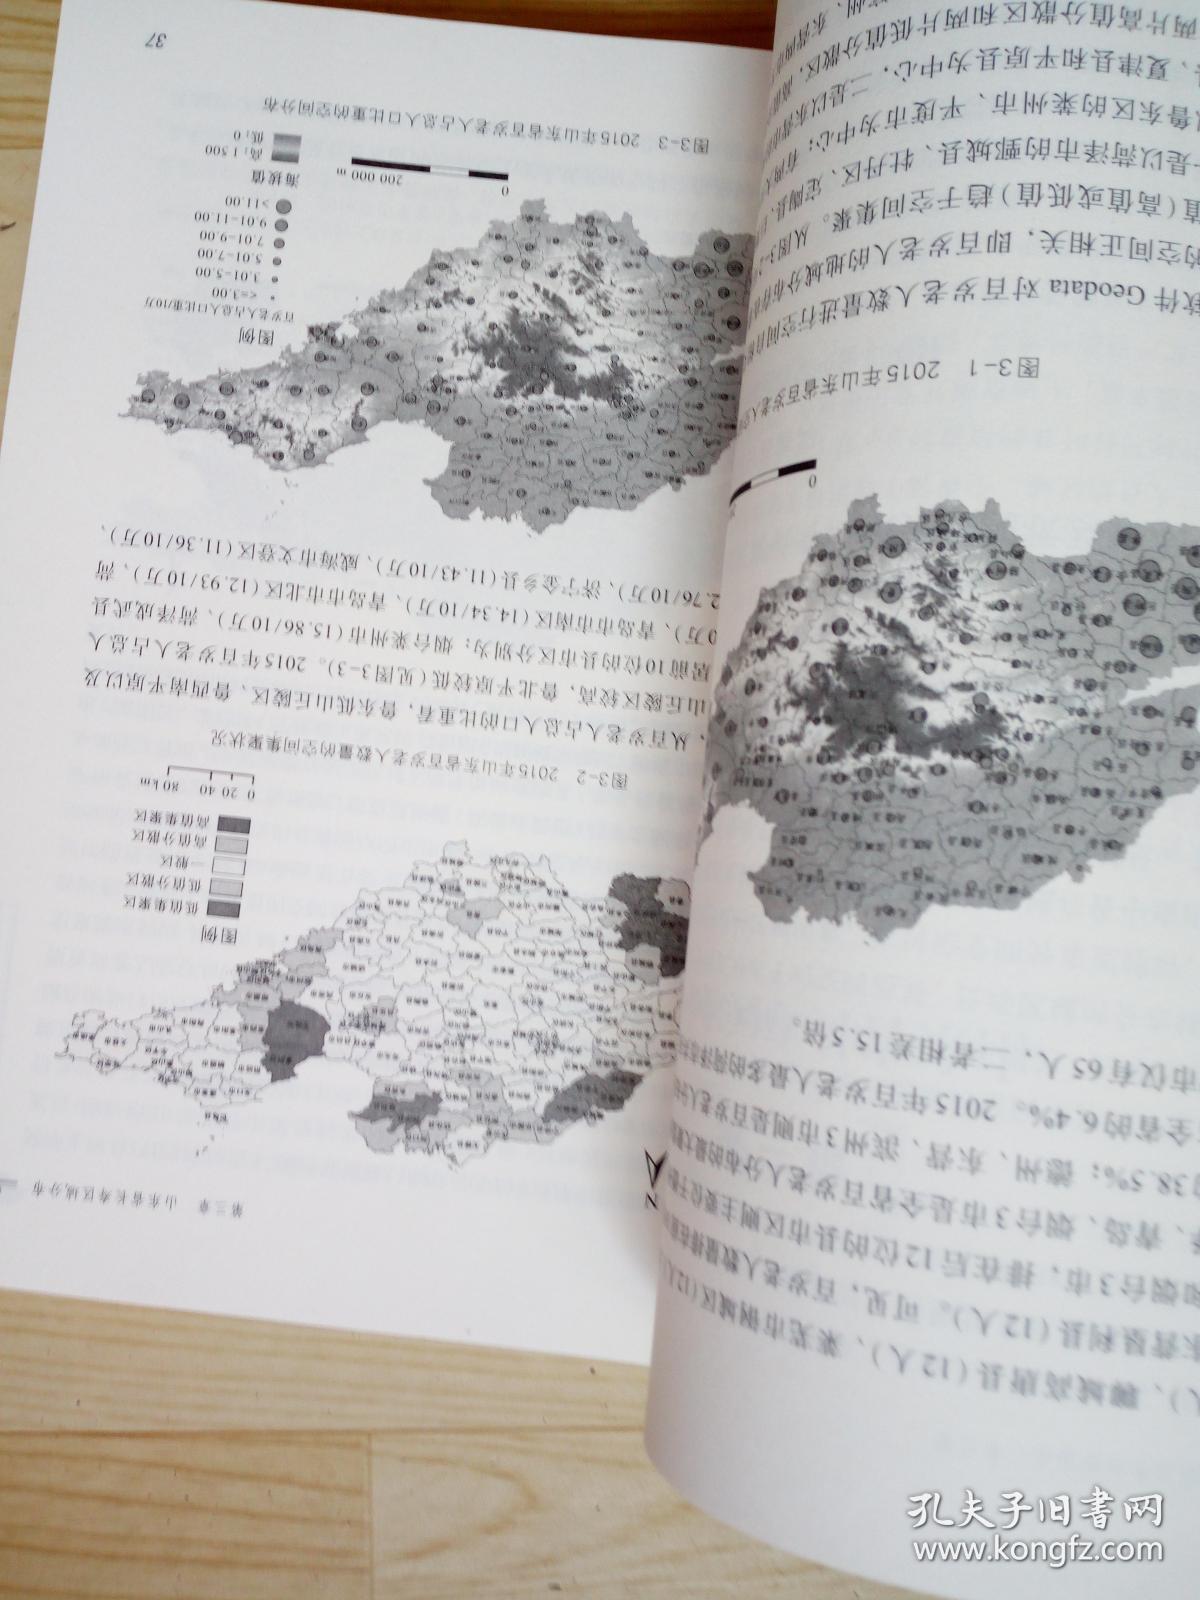 山东长寿区域分布及成因研究  印(2200册)